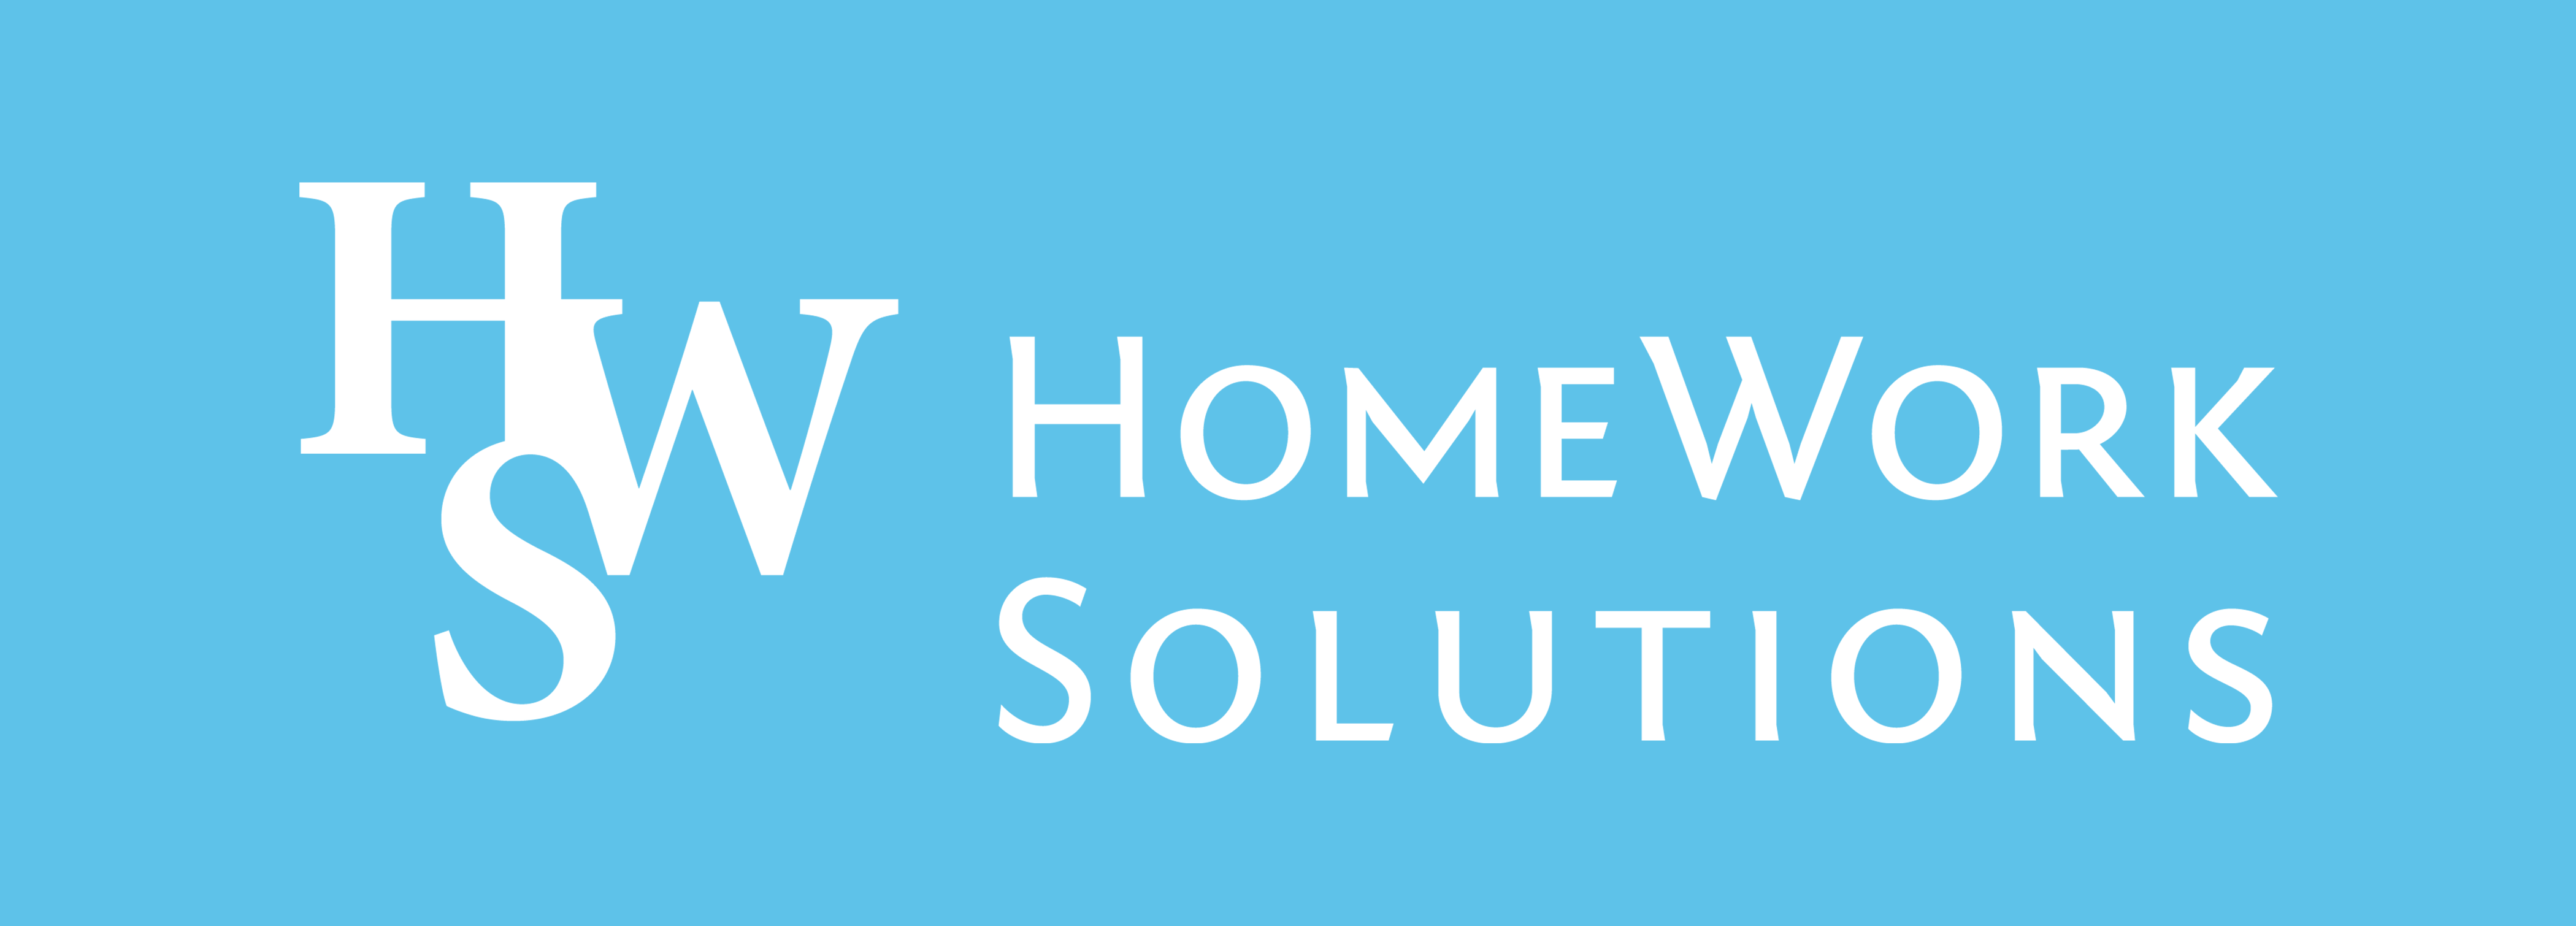 homework solutions com